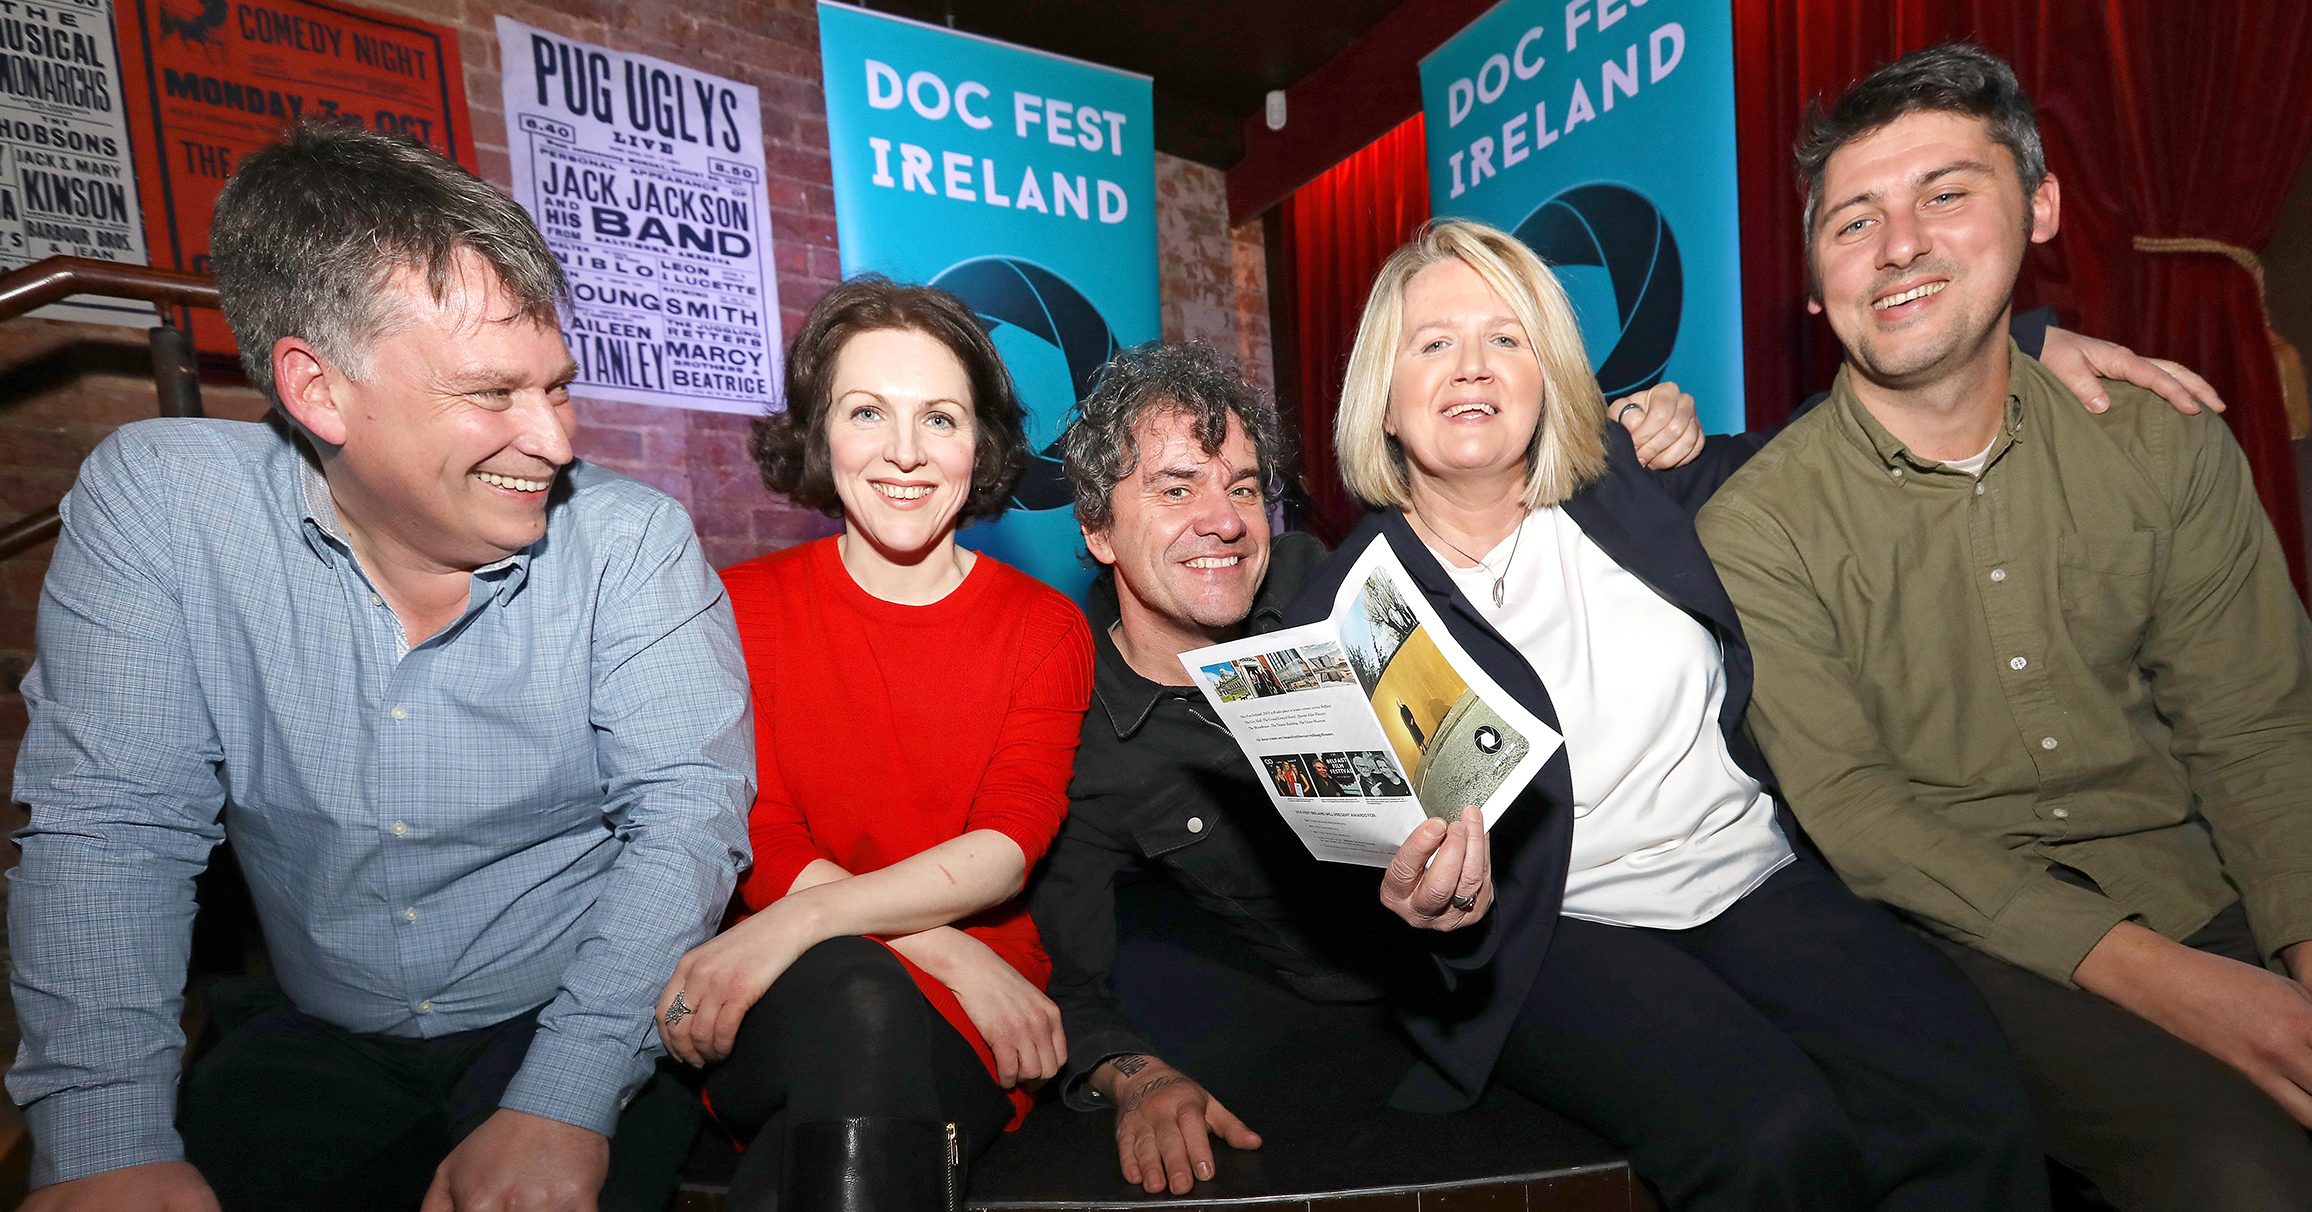 Belfast Film Festival Announces New All Ireland Documentary Film Festival